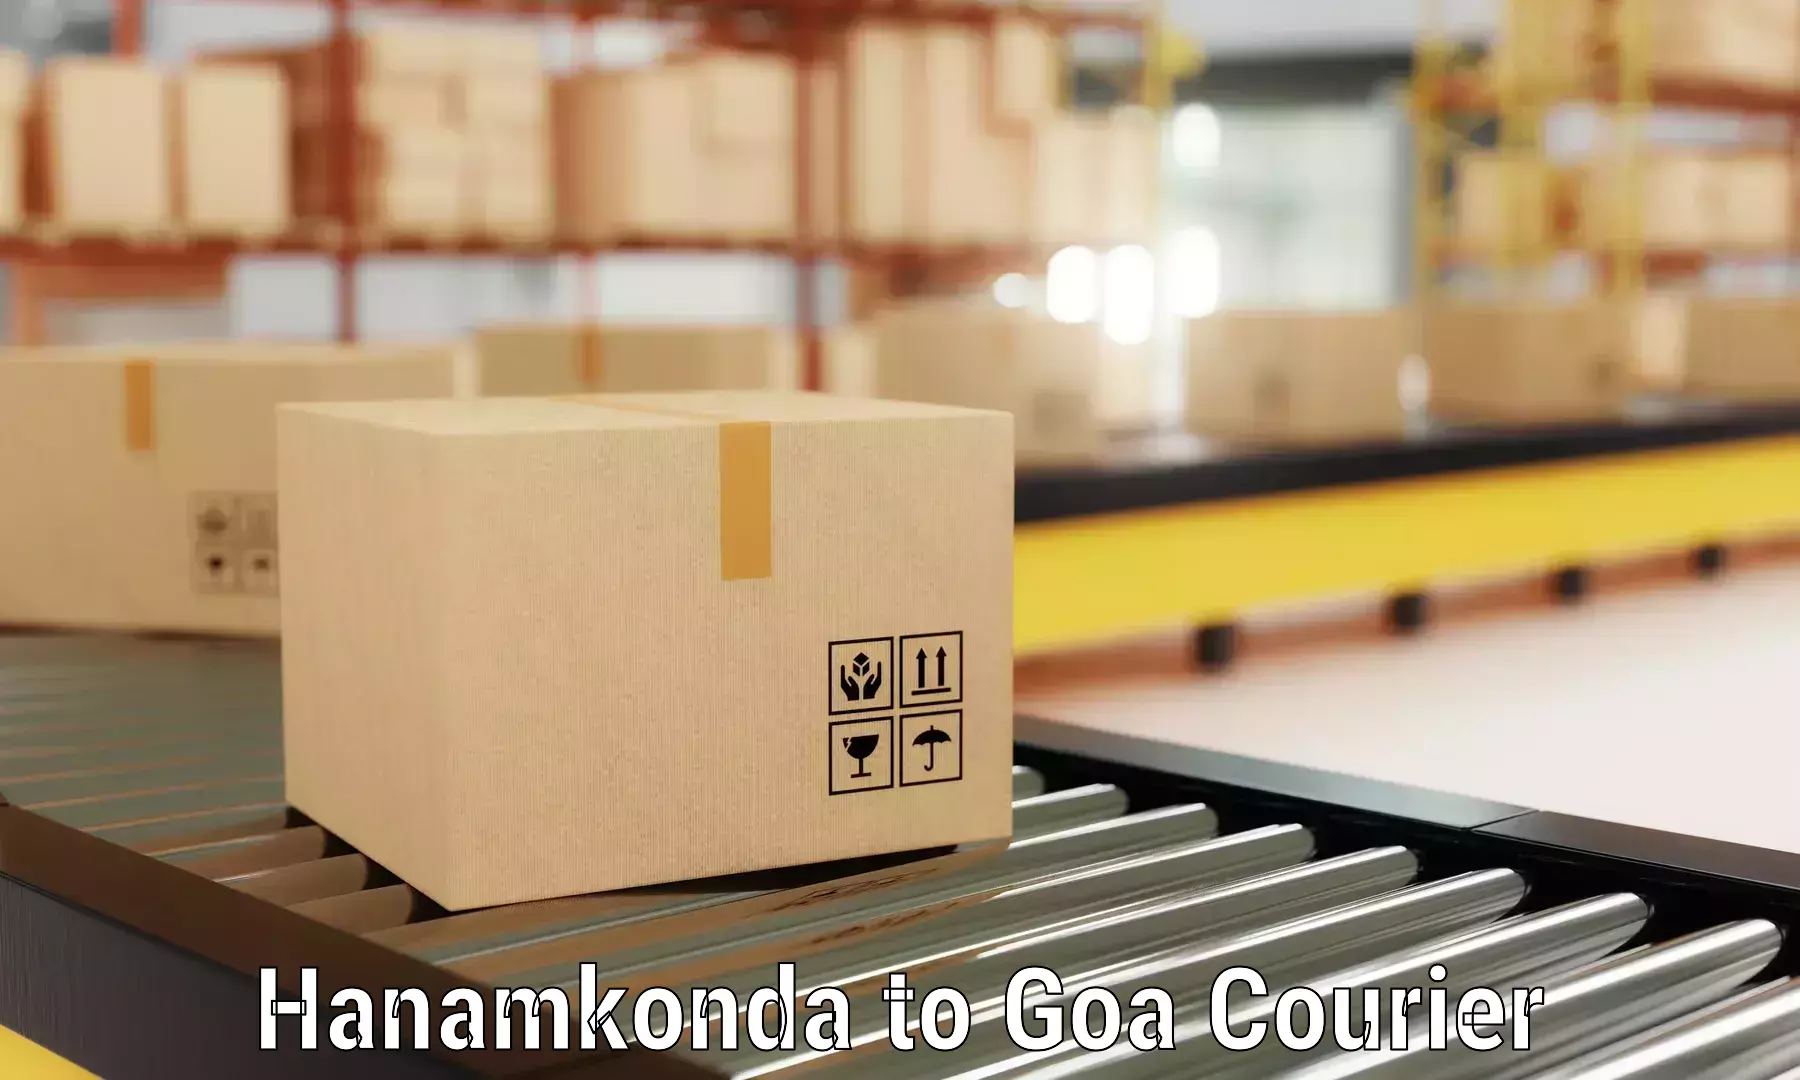 Furniture delivery service Hanamkonda to South Goa